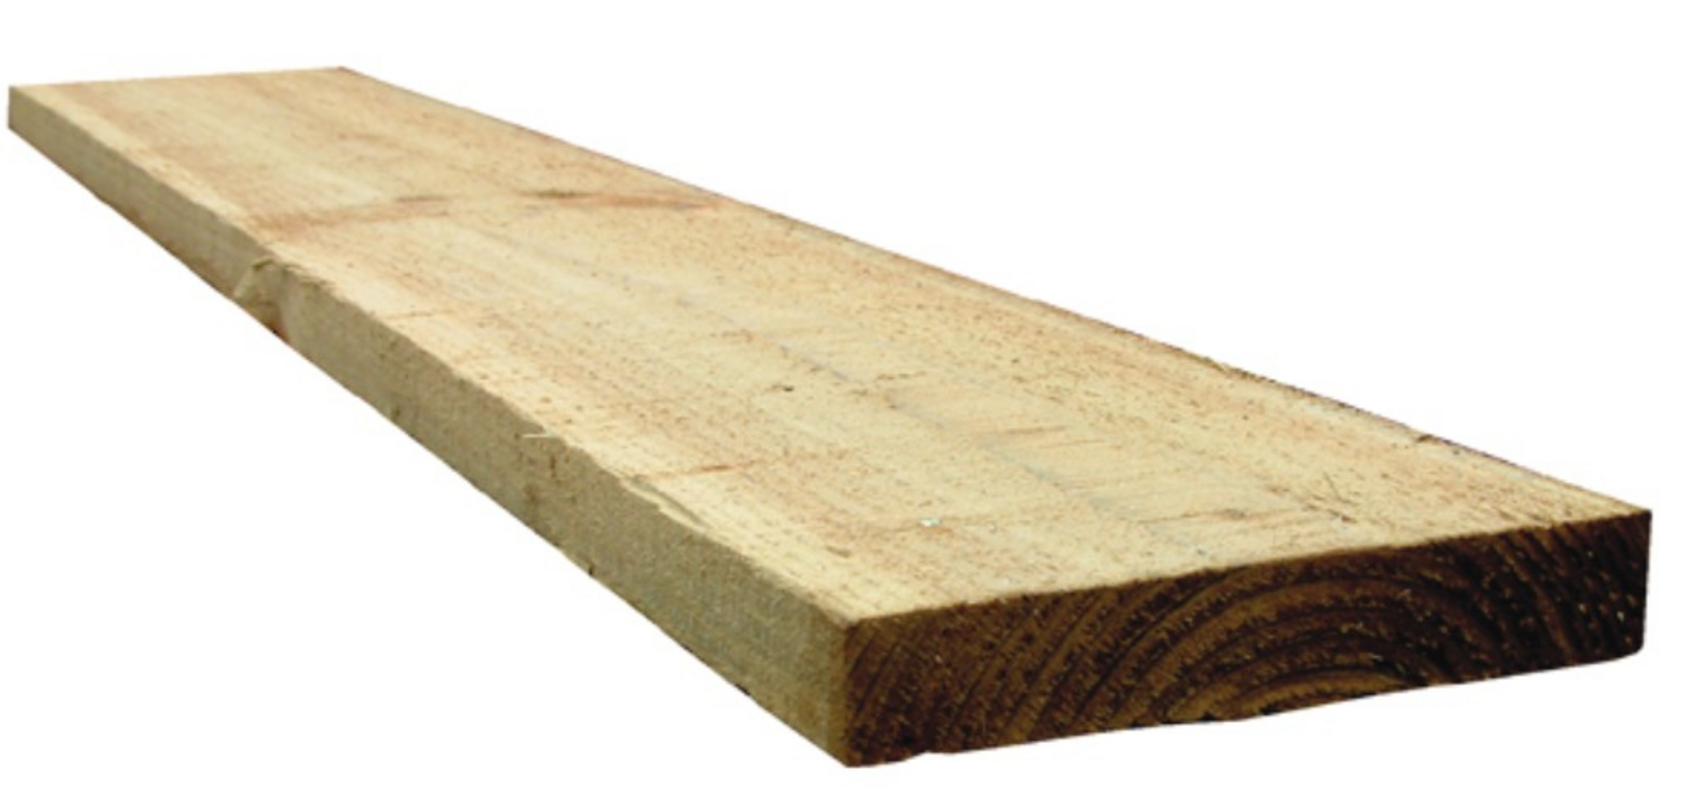 3 x 1 Timber 3.6m